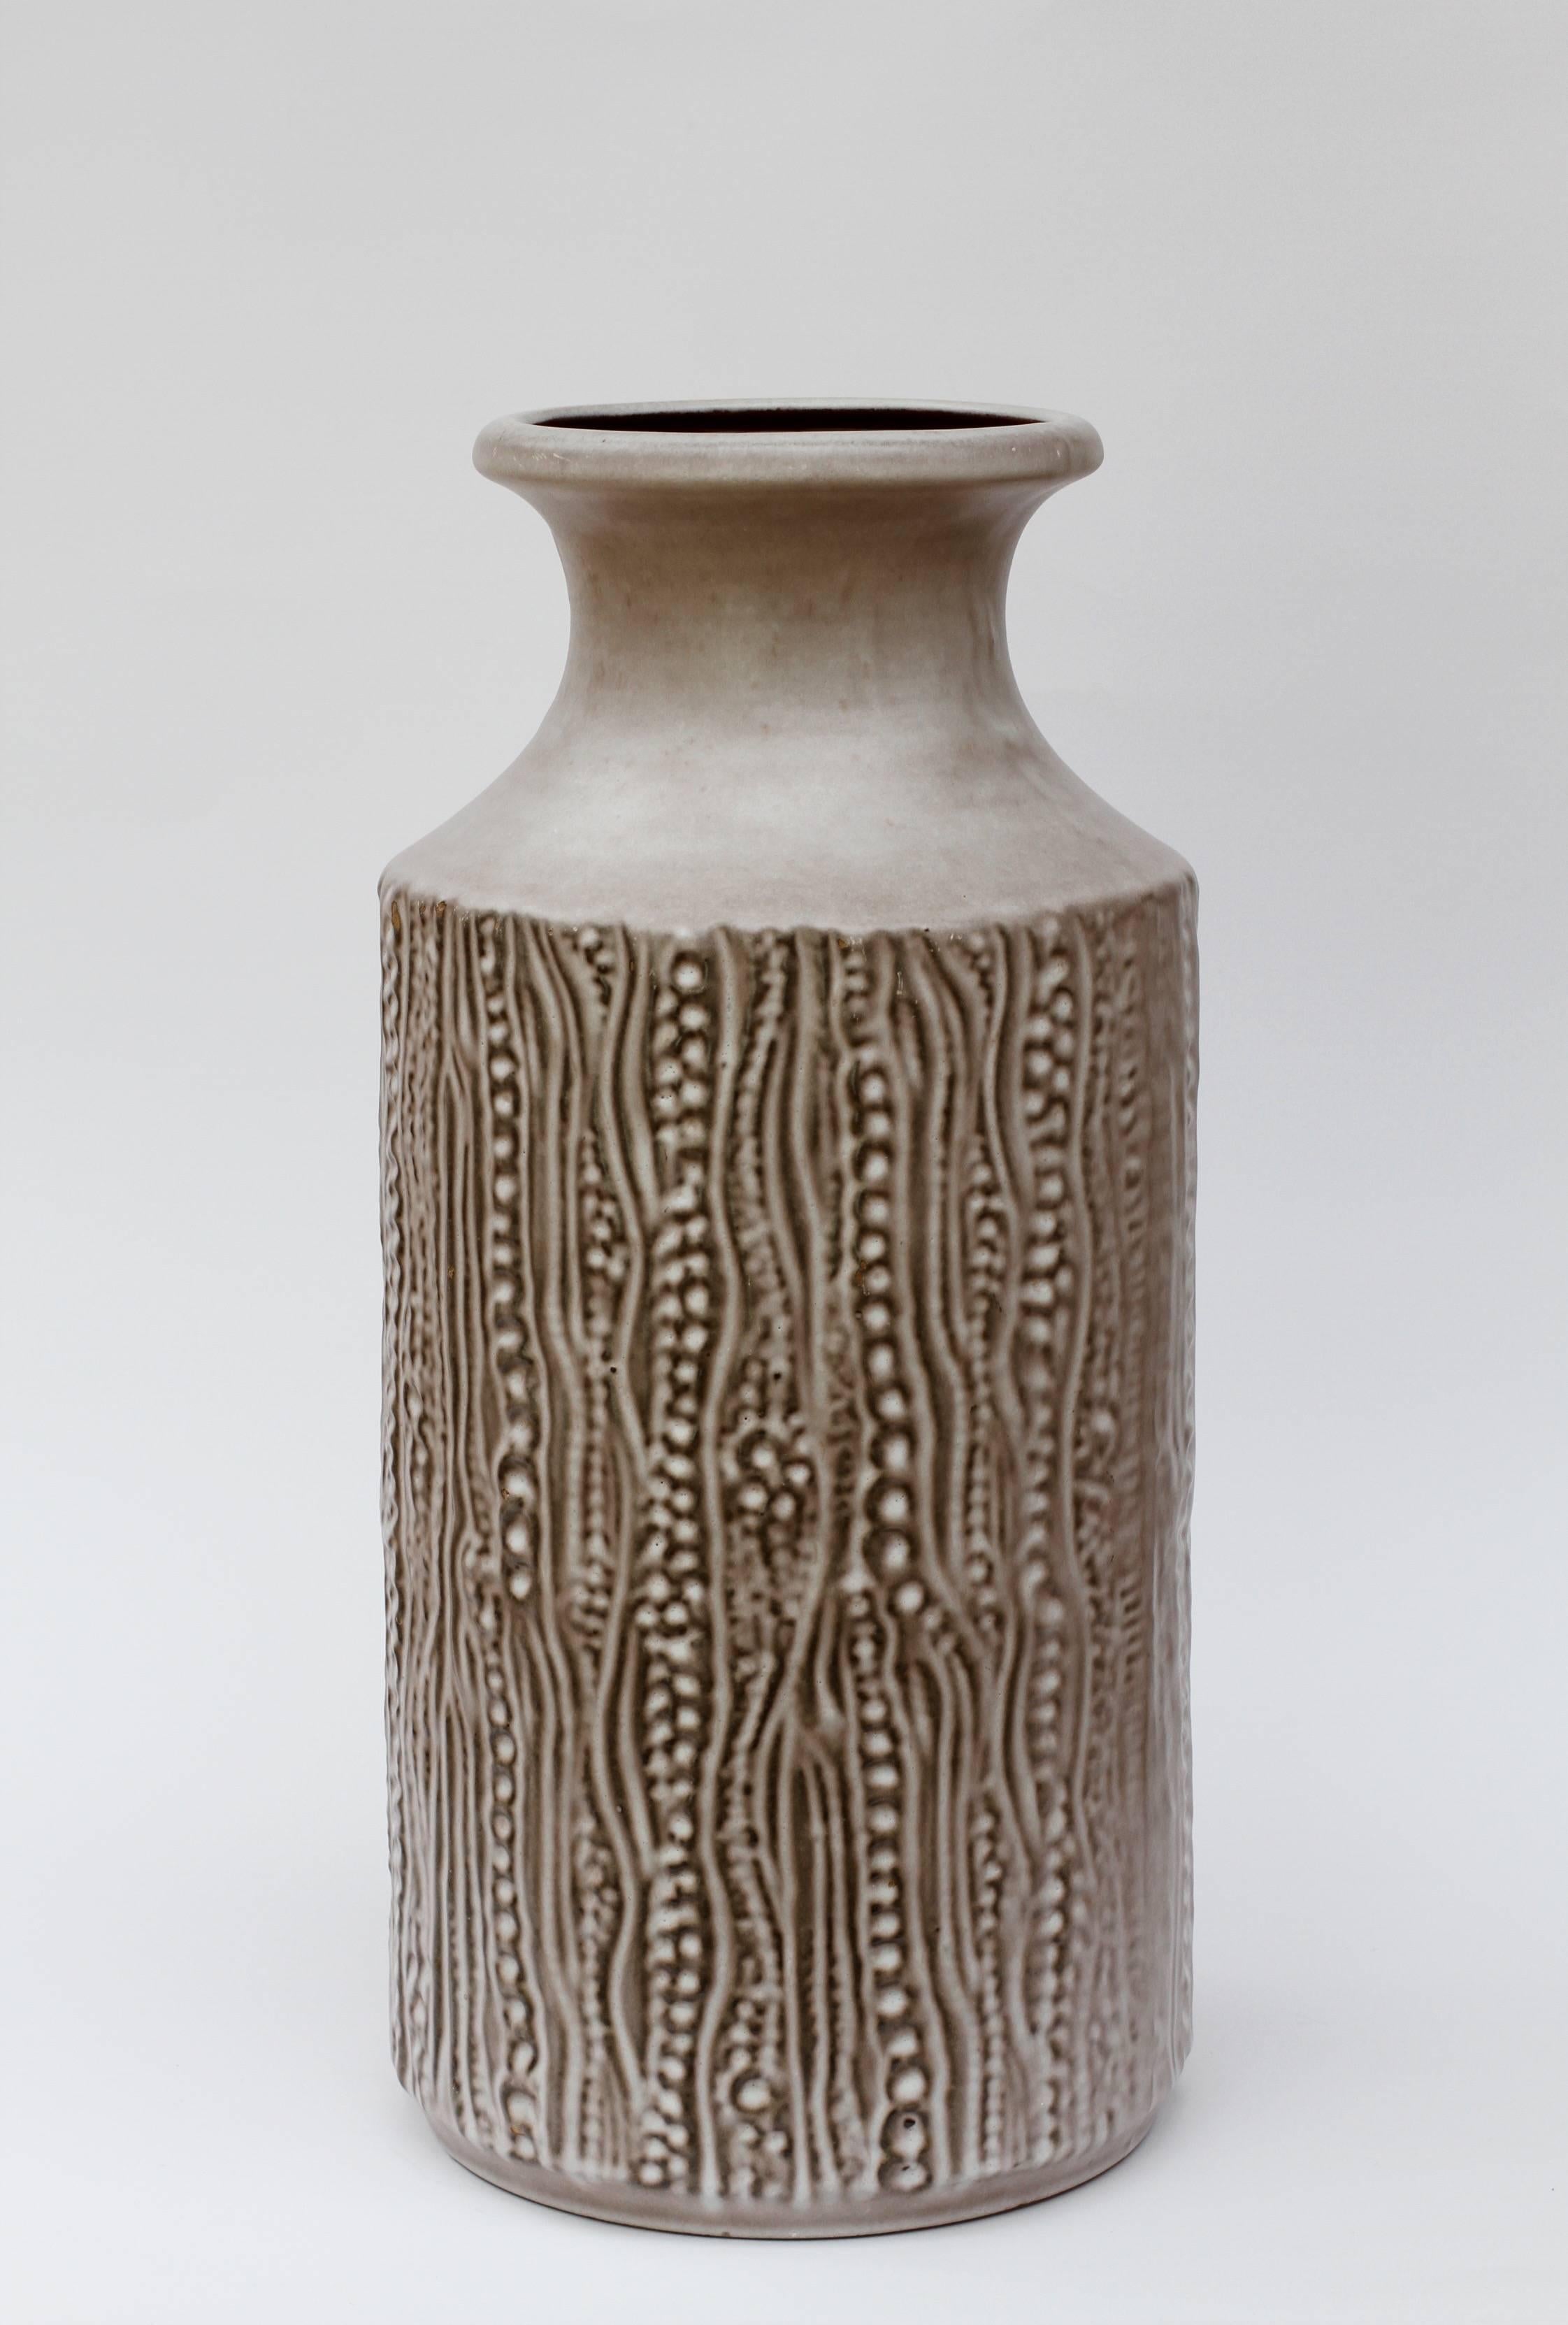 Cette belle paire de vases a été conçue par Dieter Peter pour Carstens Tonnieshof:: vers 1970-1979. 

Les Carstens sont considérés par beaucoup comme les meilleurs producteurs de poterie d'Allemagne de l'Ouest et Dieter Peters était le meilleur